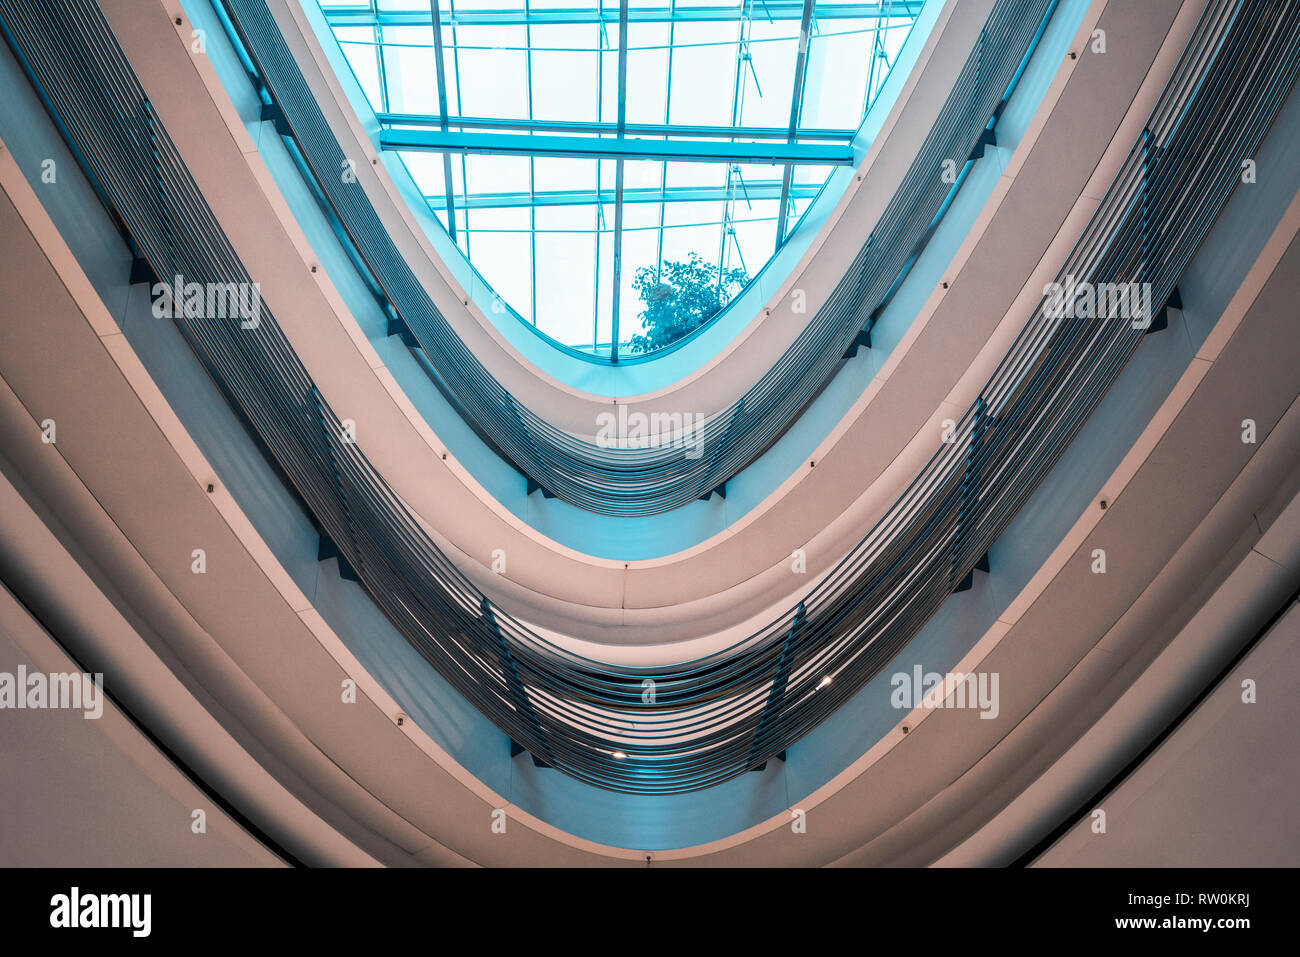 Architettura futuristica con un soffitto in vetro e parapetti a spirale in un moderno centro commerciale, con blu brillante di luce, nella città di Stoccarda, Germania. Foto Stock